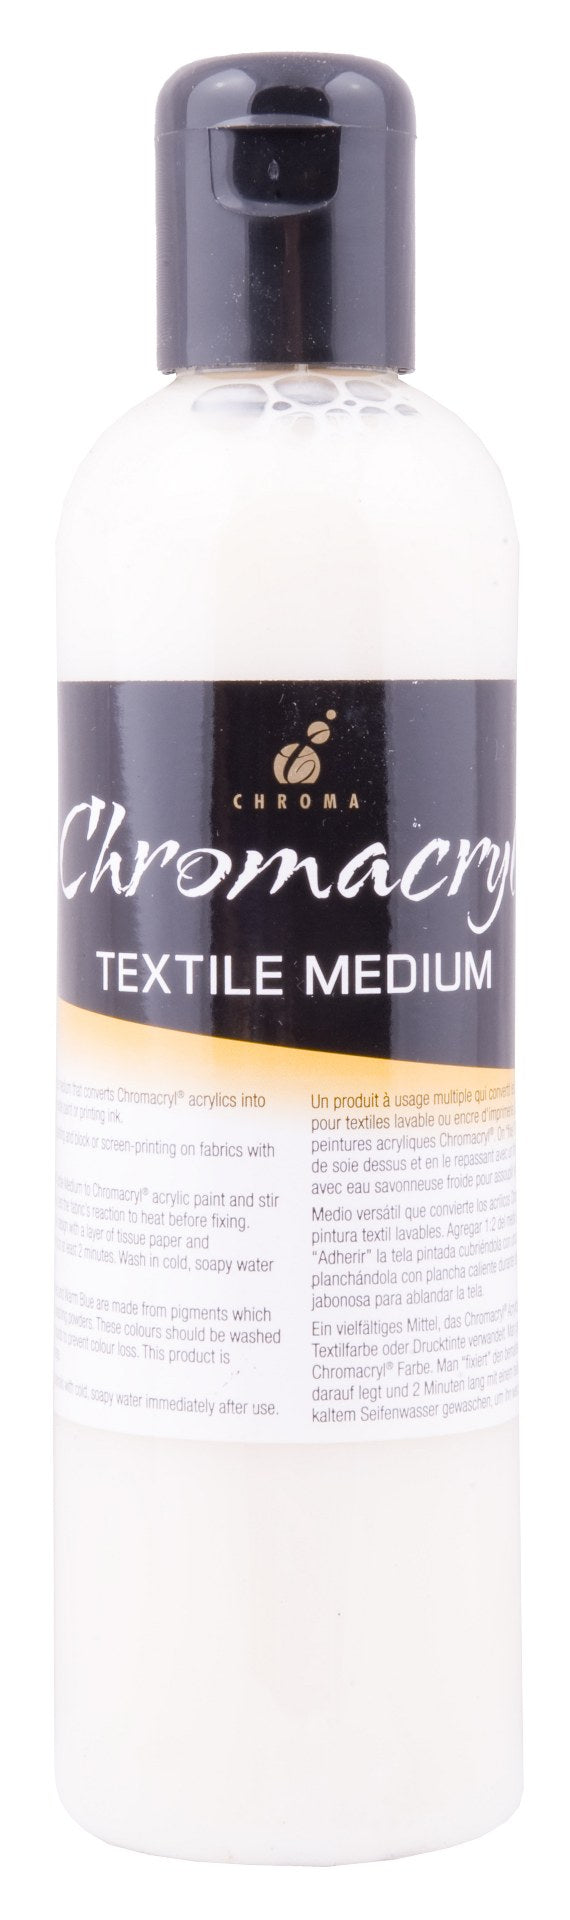 Chromacryl Textile Medium 250ml